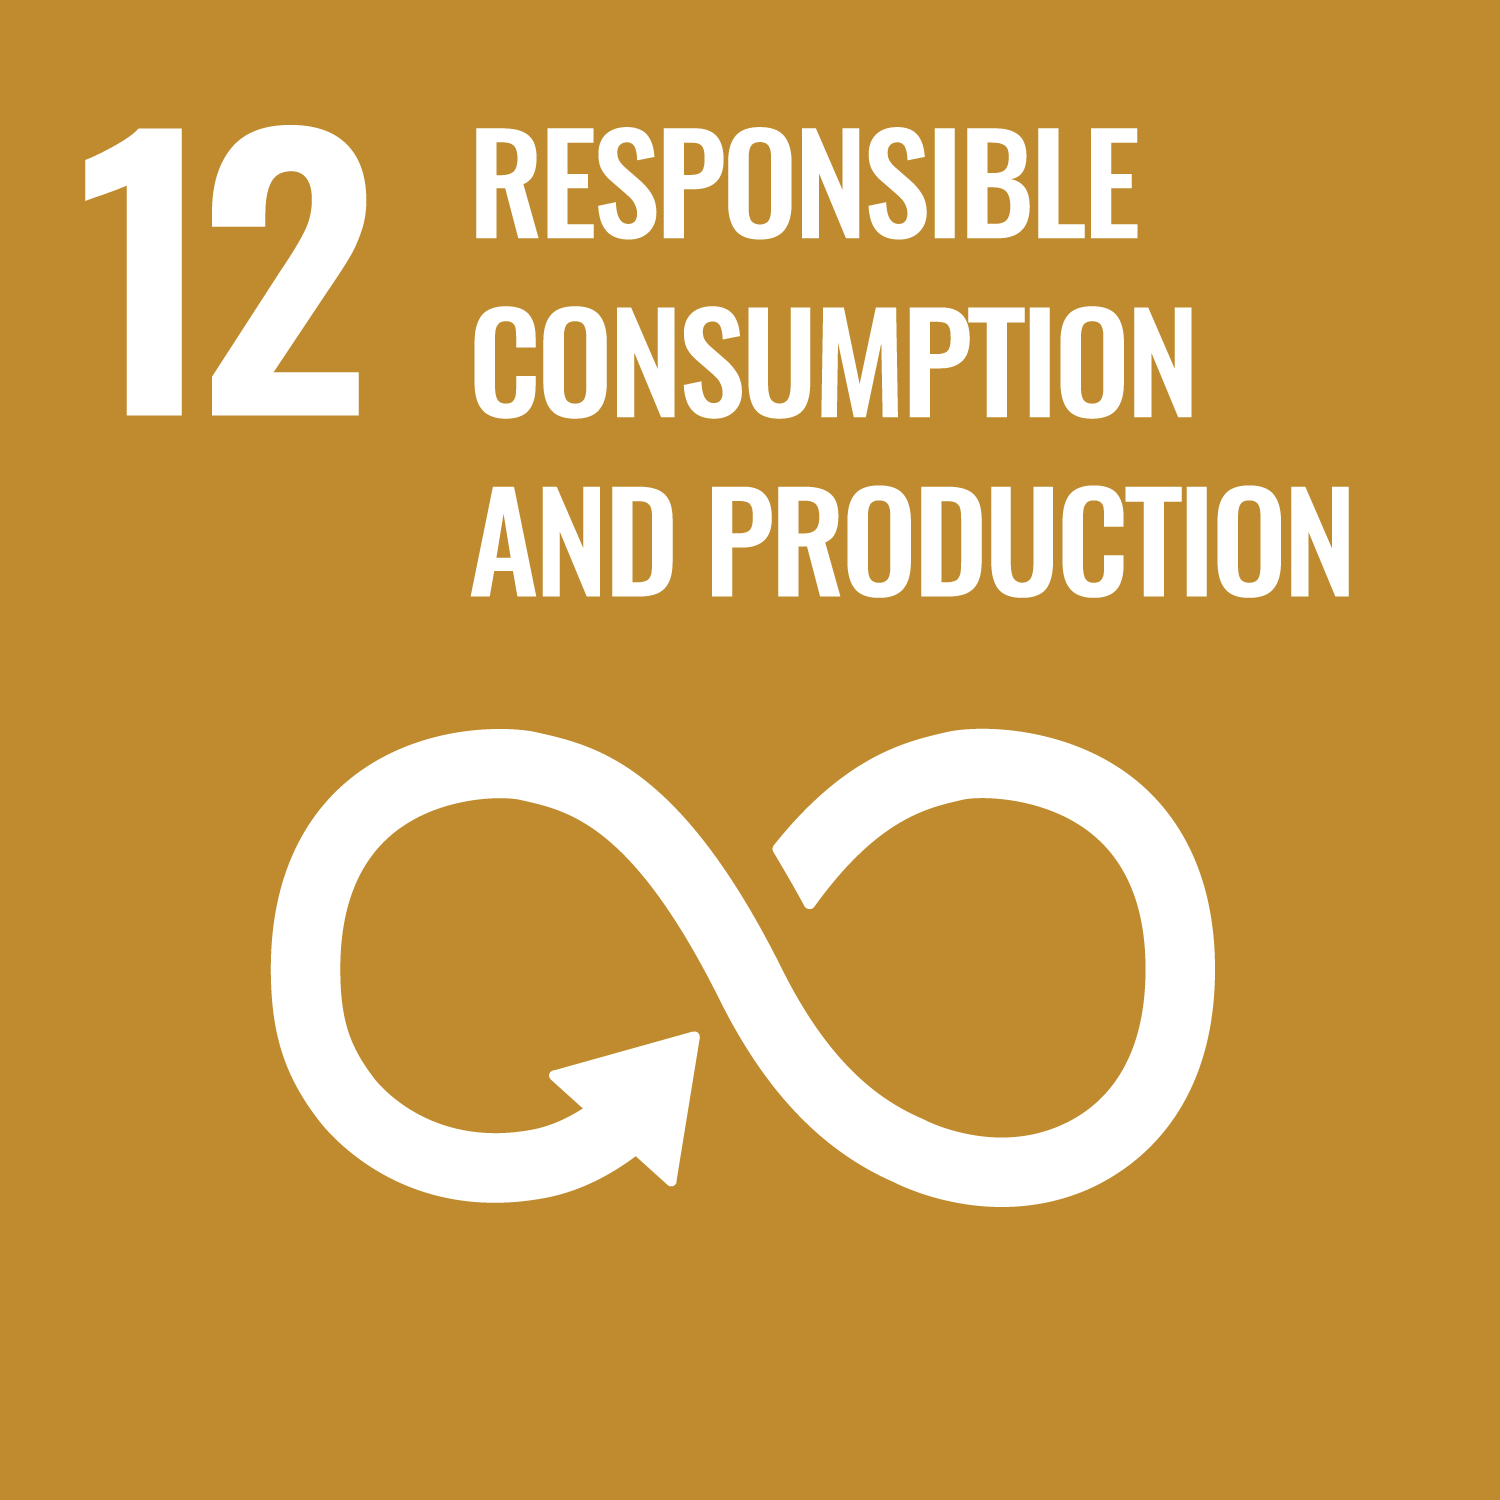 responsible consumption and production / producción y consumo responsable